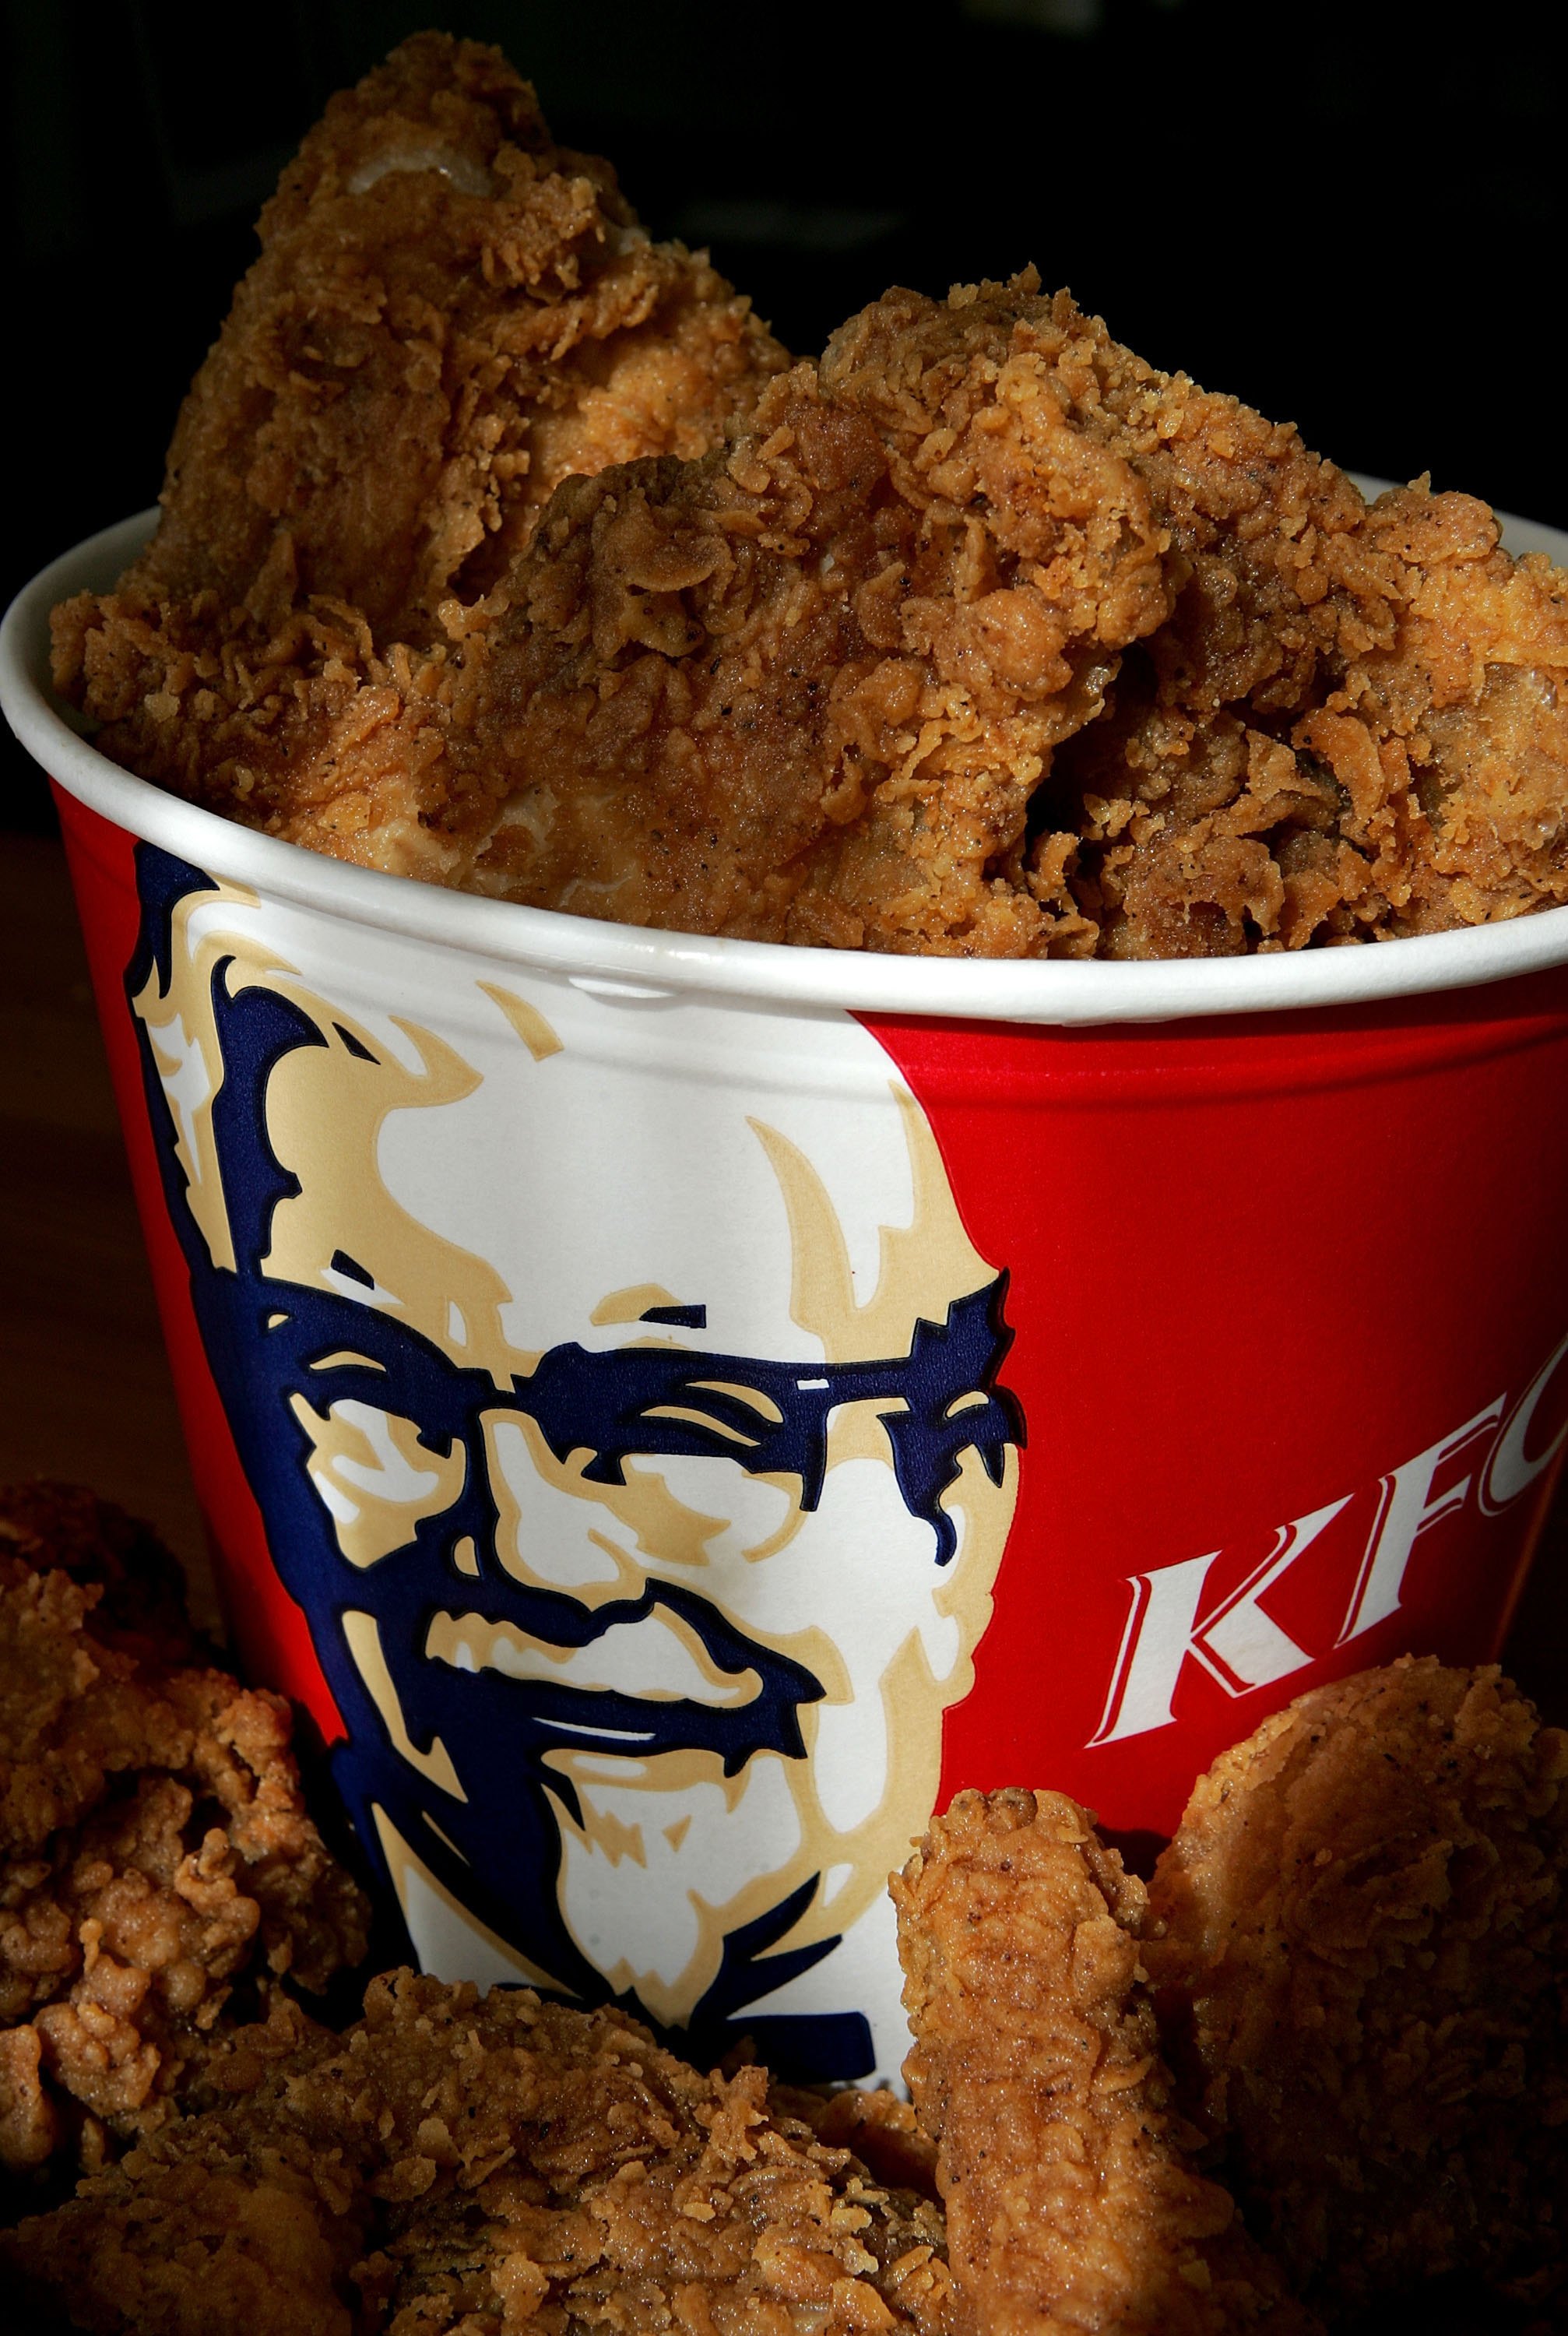 "Vi har ett ansvar att försvara KFC:s rykte som en restaurang med säker, högkvalitéts-mat", säger en talesperson för KFC.